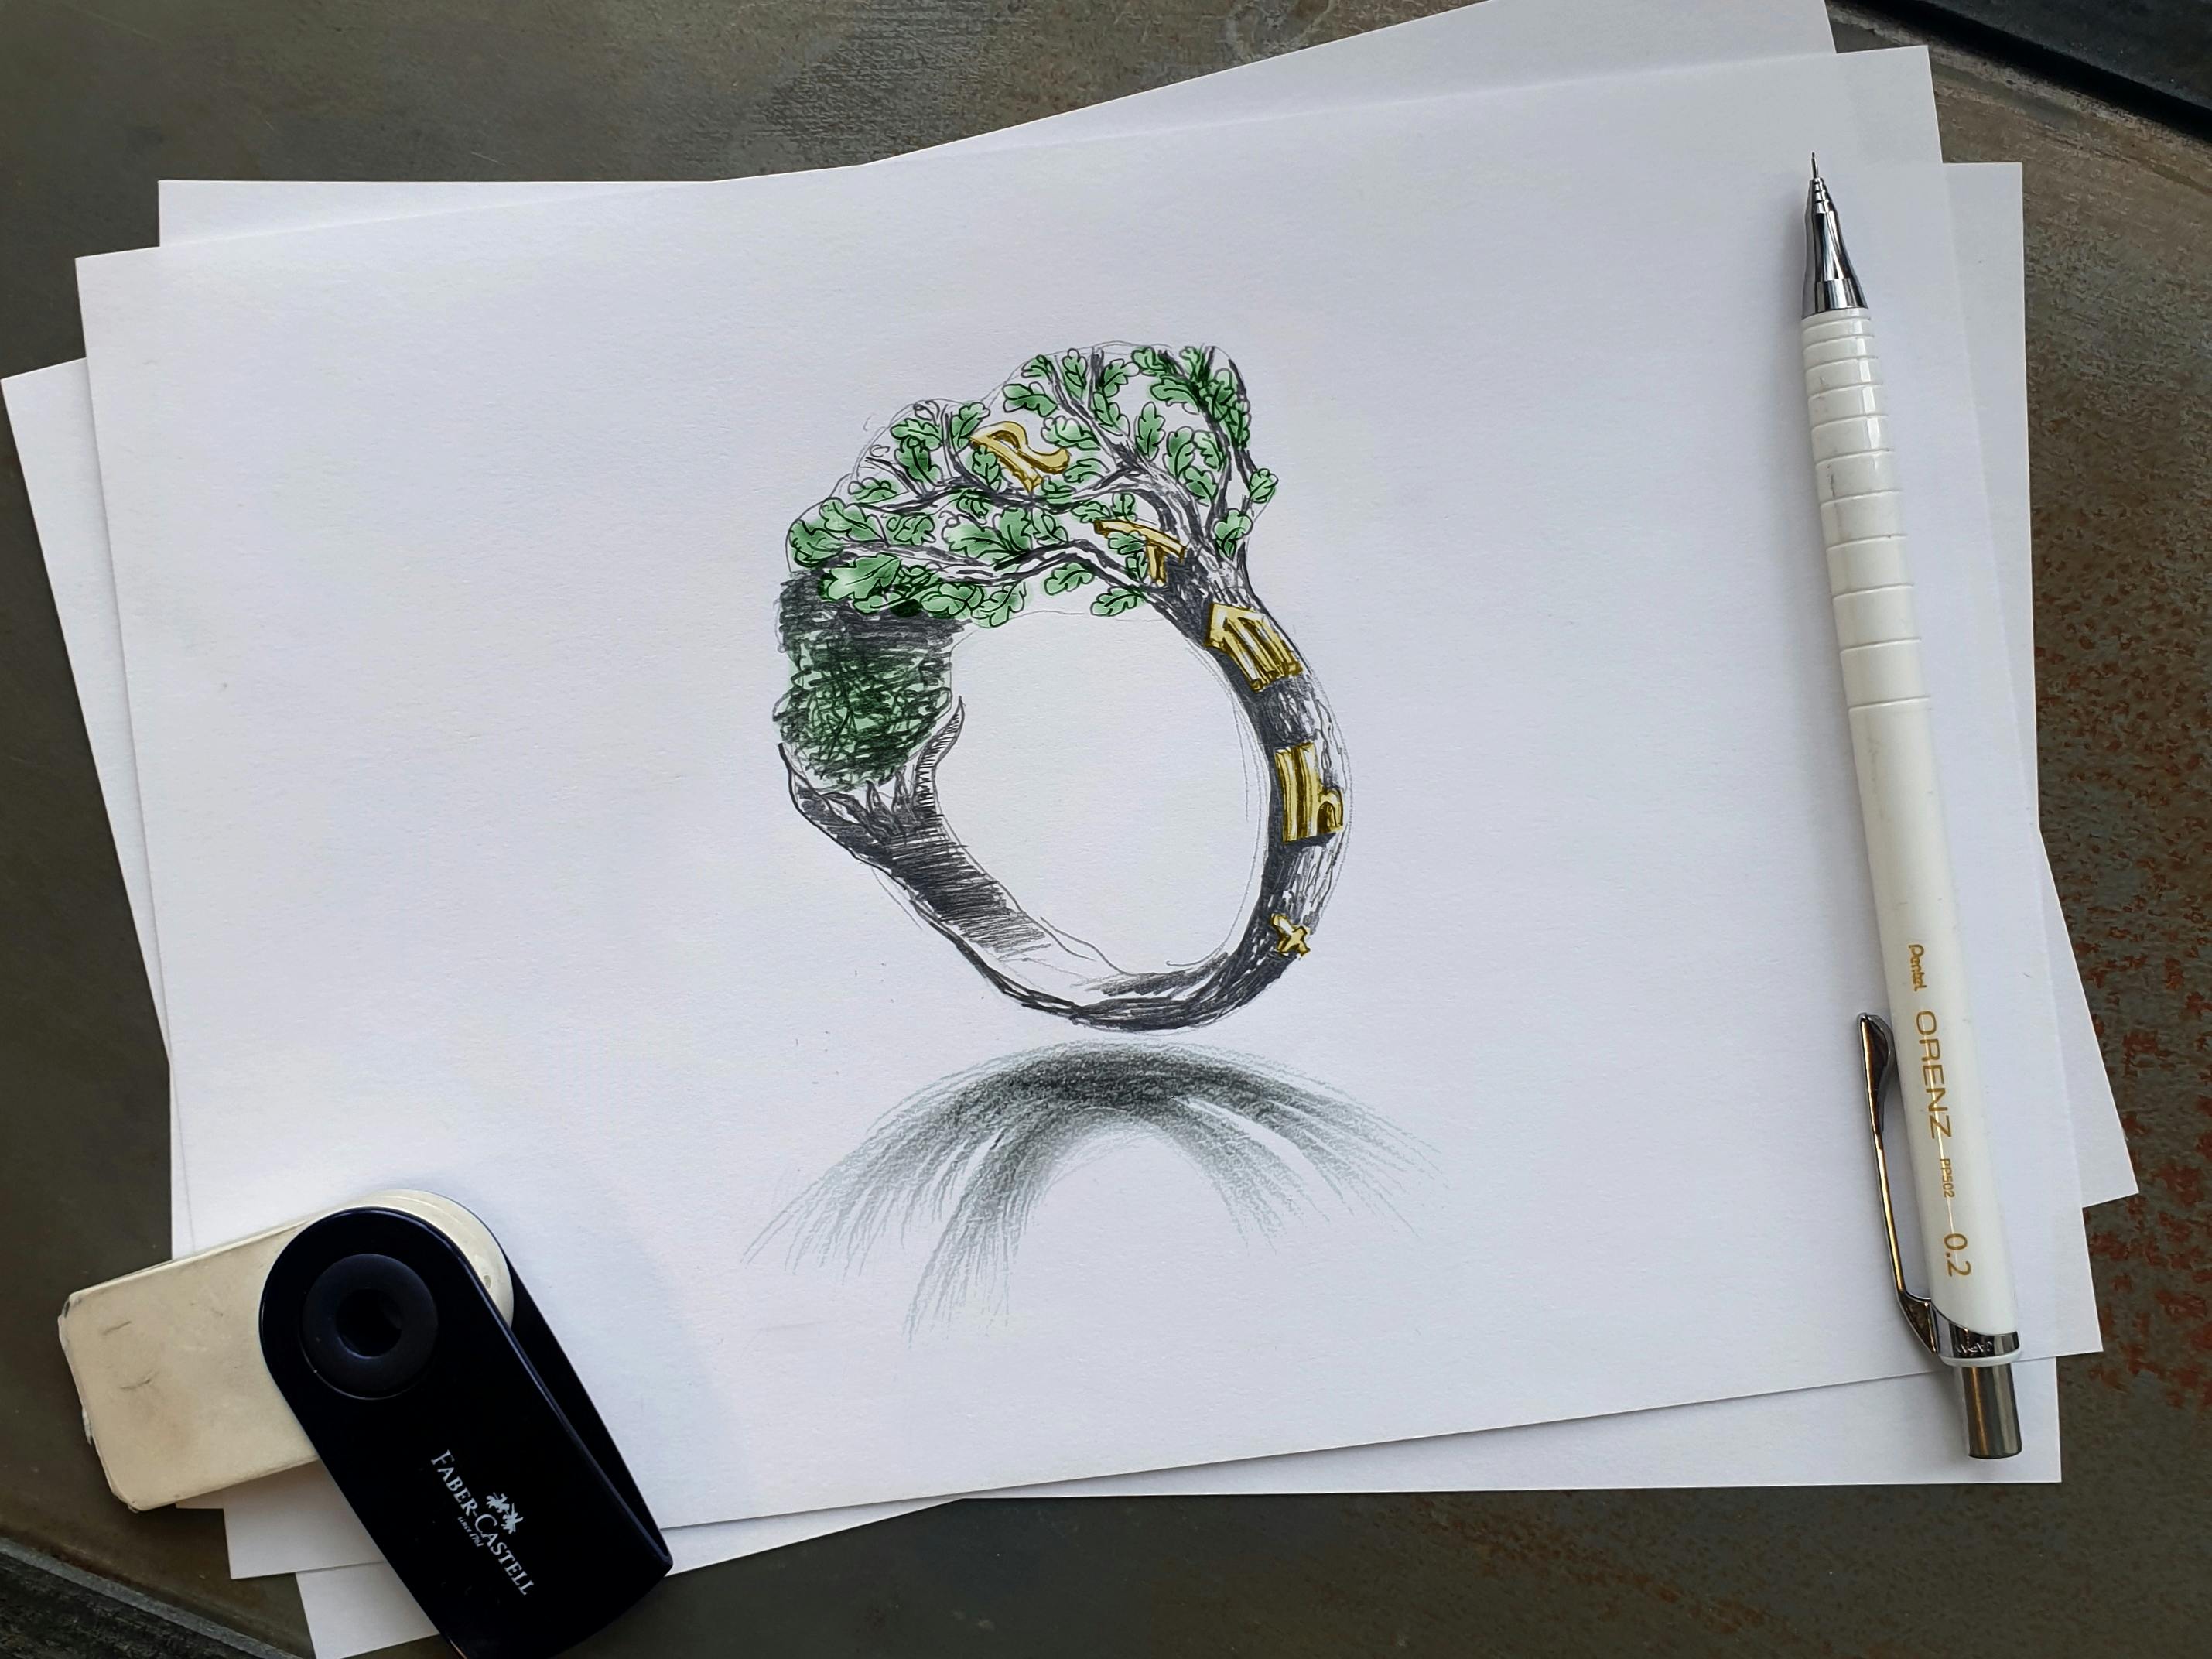 Projekt bransolety na zamówienie w kształcie drzewa opracowany w oparciu o wywiad z klientem.